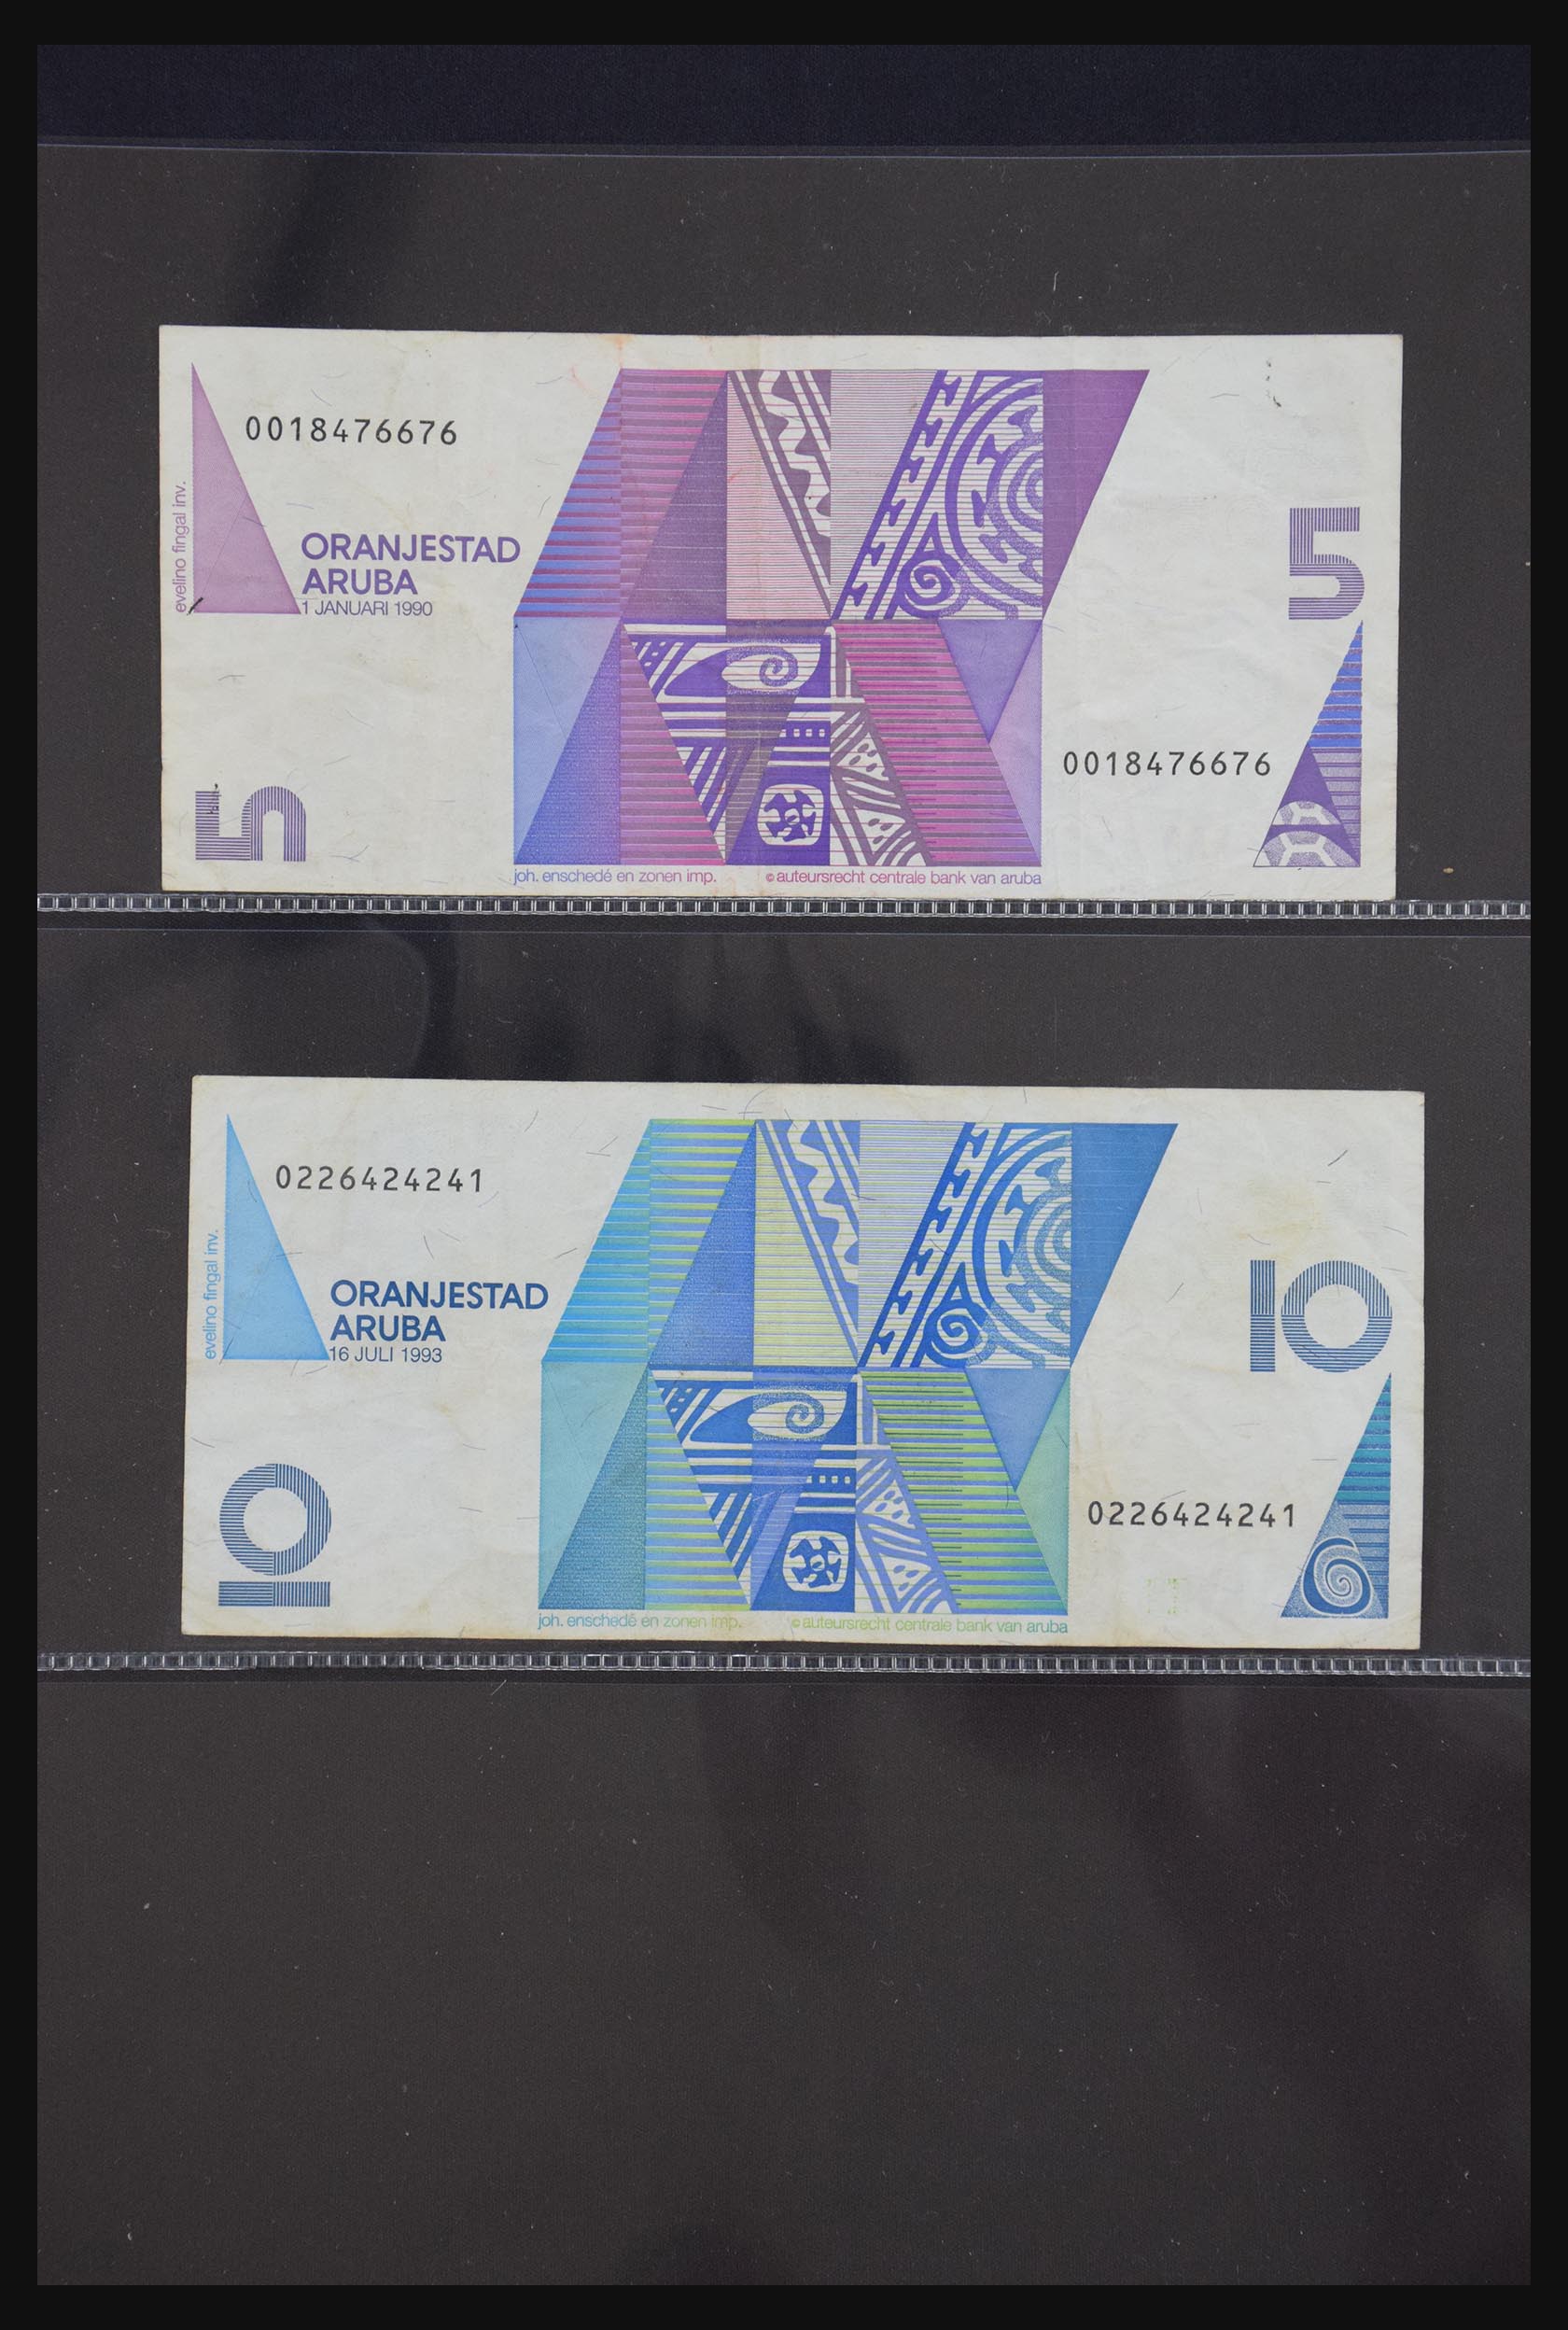 29404 074 - 29404 Netherlands banknotes 1924-1997.